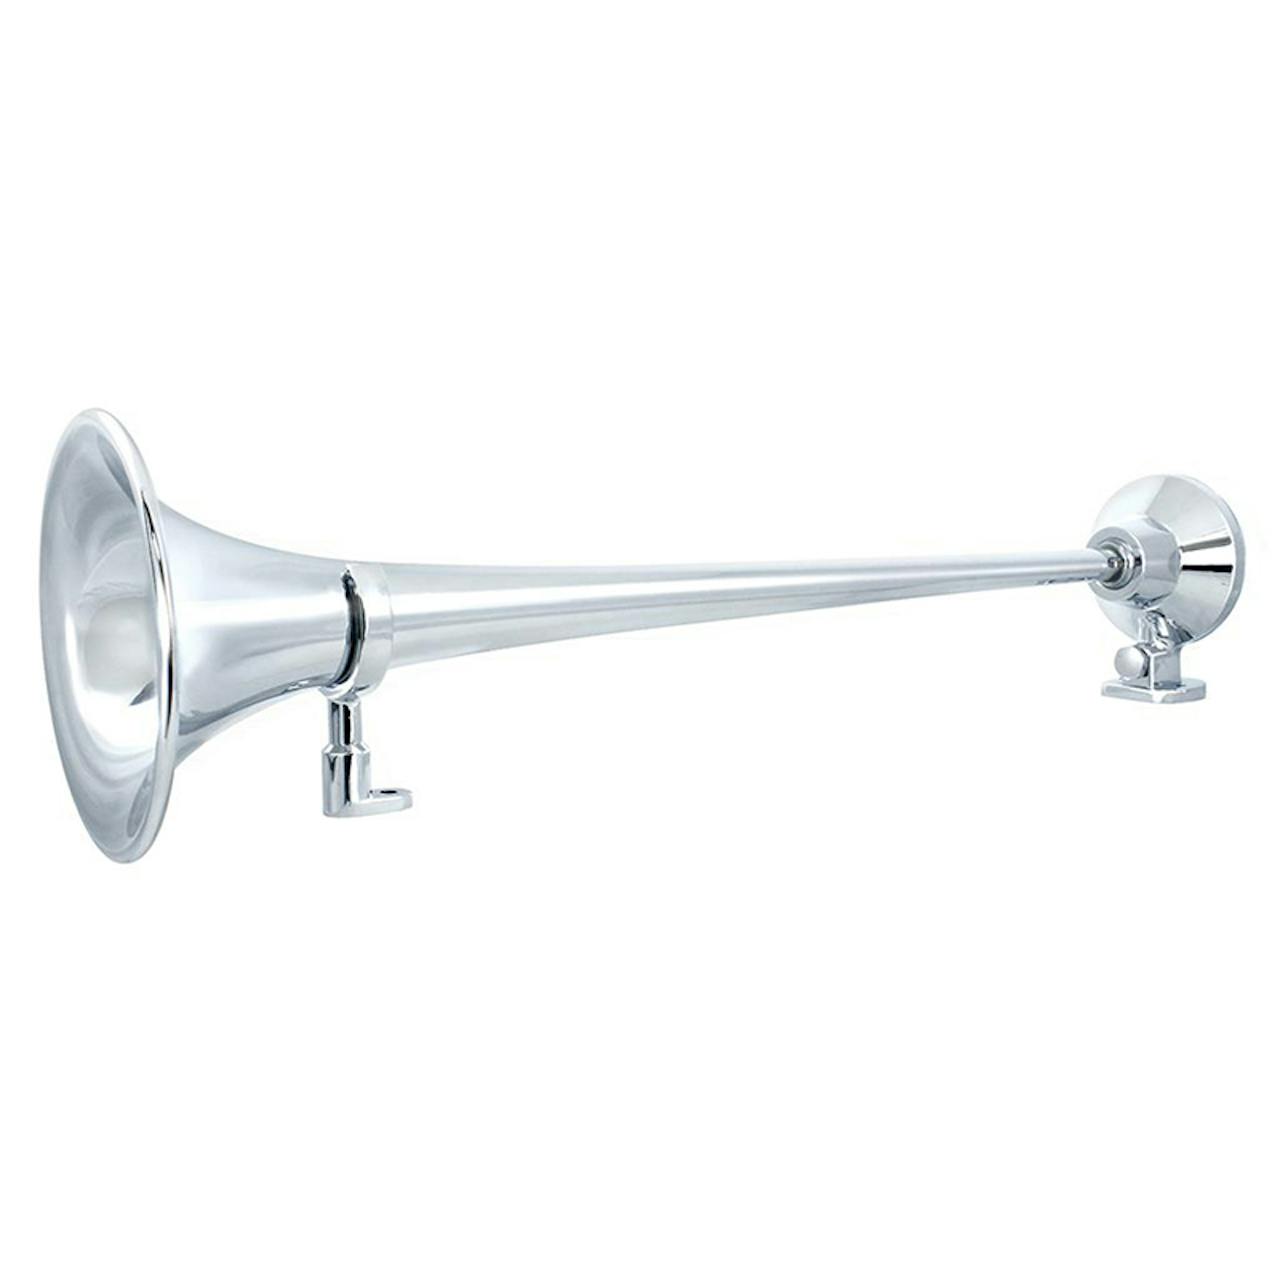 Unitec - Avertisseur sonore - corne de brume / Air horn